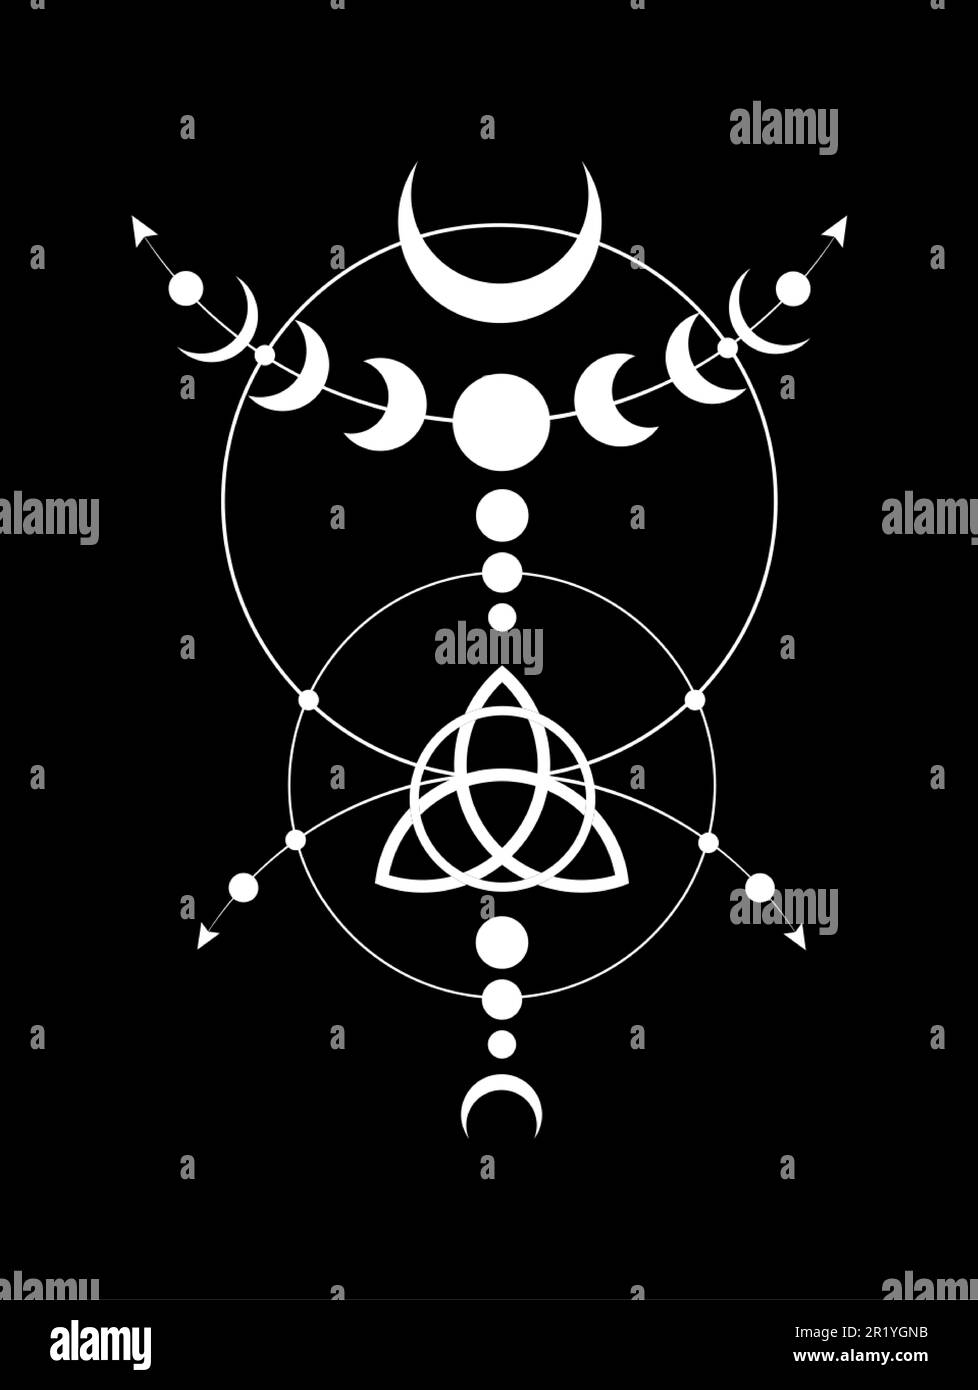 Phases mystiques de la Lune bordure du cadre de Wicca. Triquetra géométrie sacrée. Logo, symbole de la triple déesse Wiccan, cercle d'énergie, vecteur de style boho tattoo blanc Illustration de Vecteur